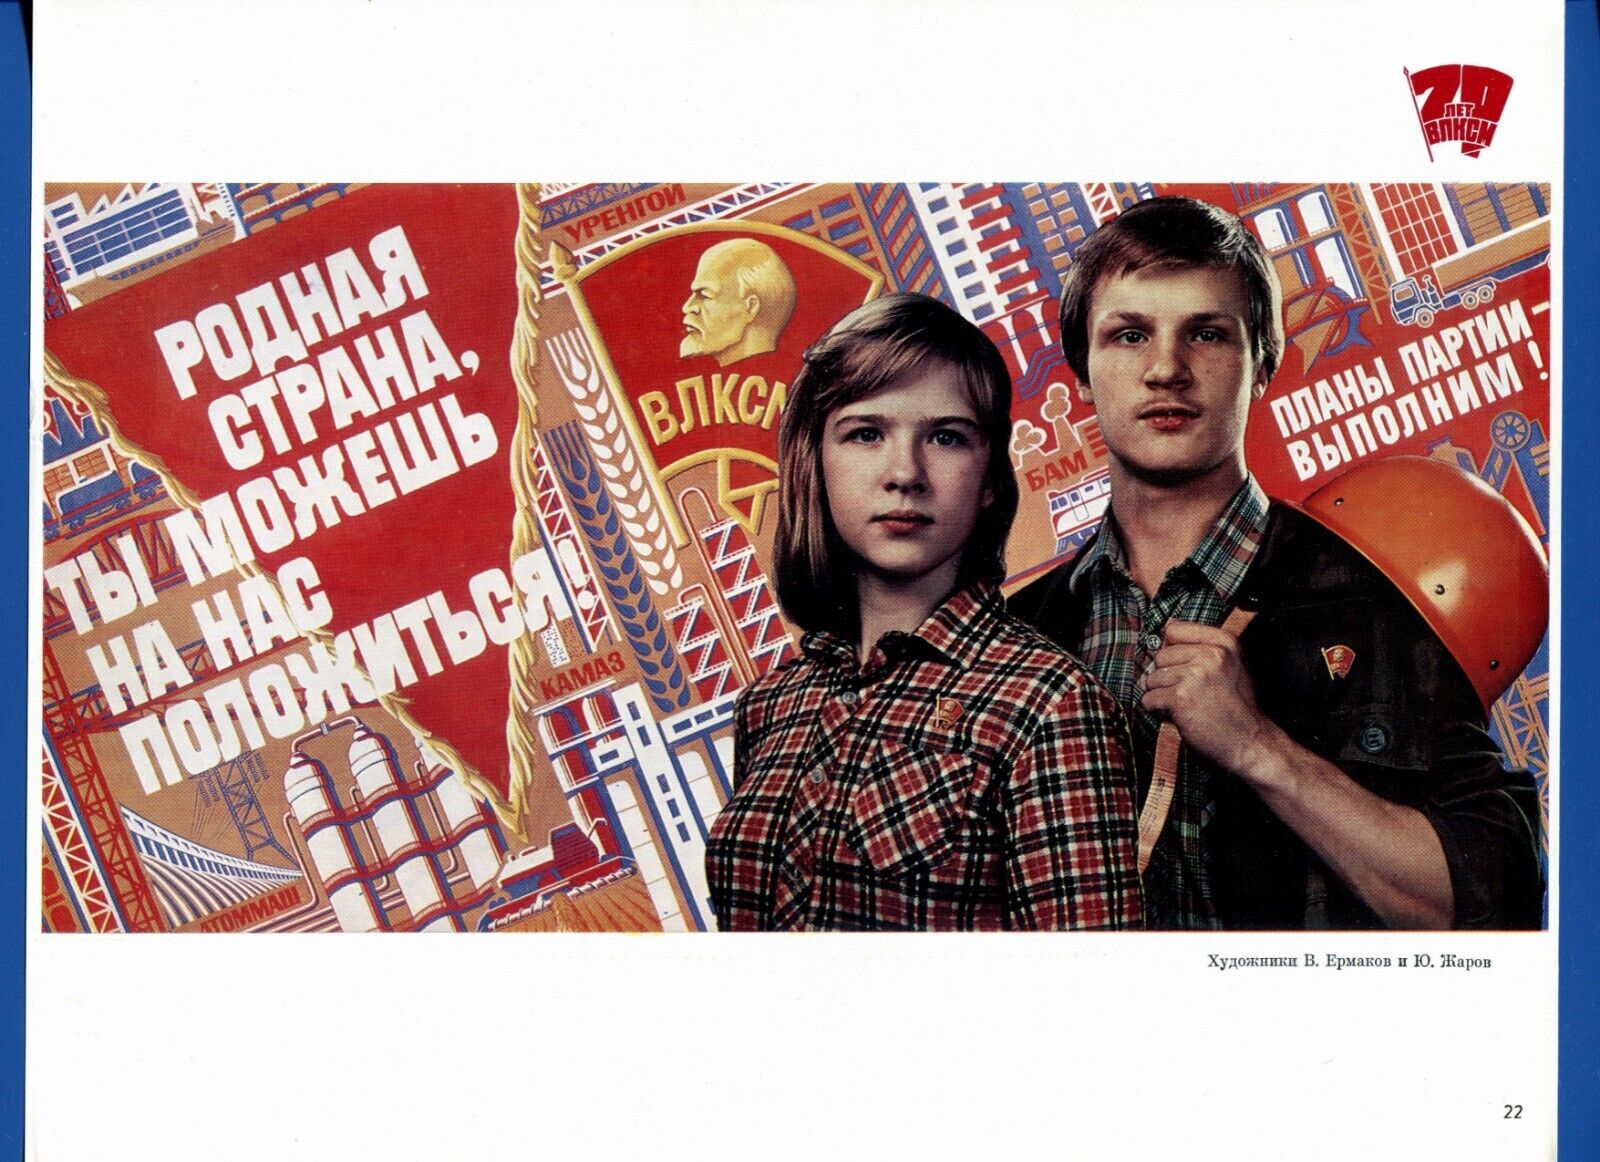 Komsomol Original Poster Soviet History, Lenin Russia, USSR Political Propaganda